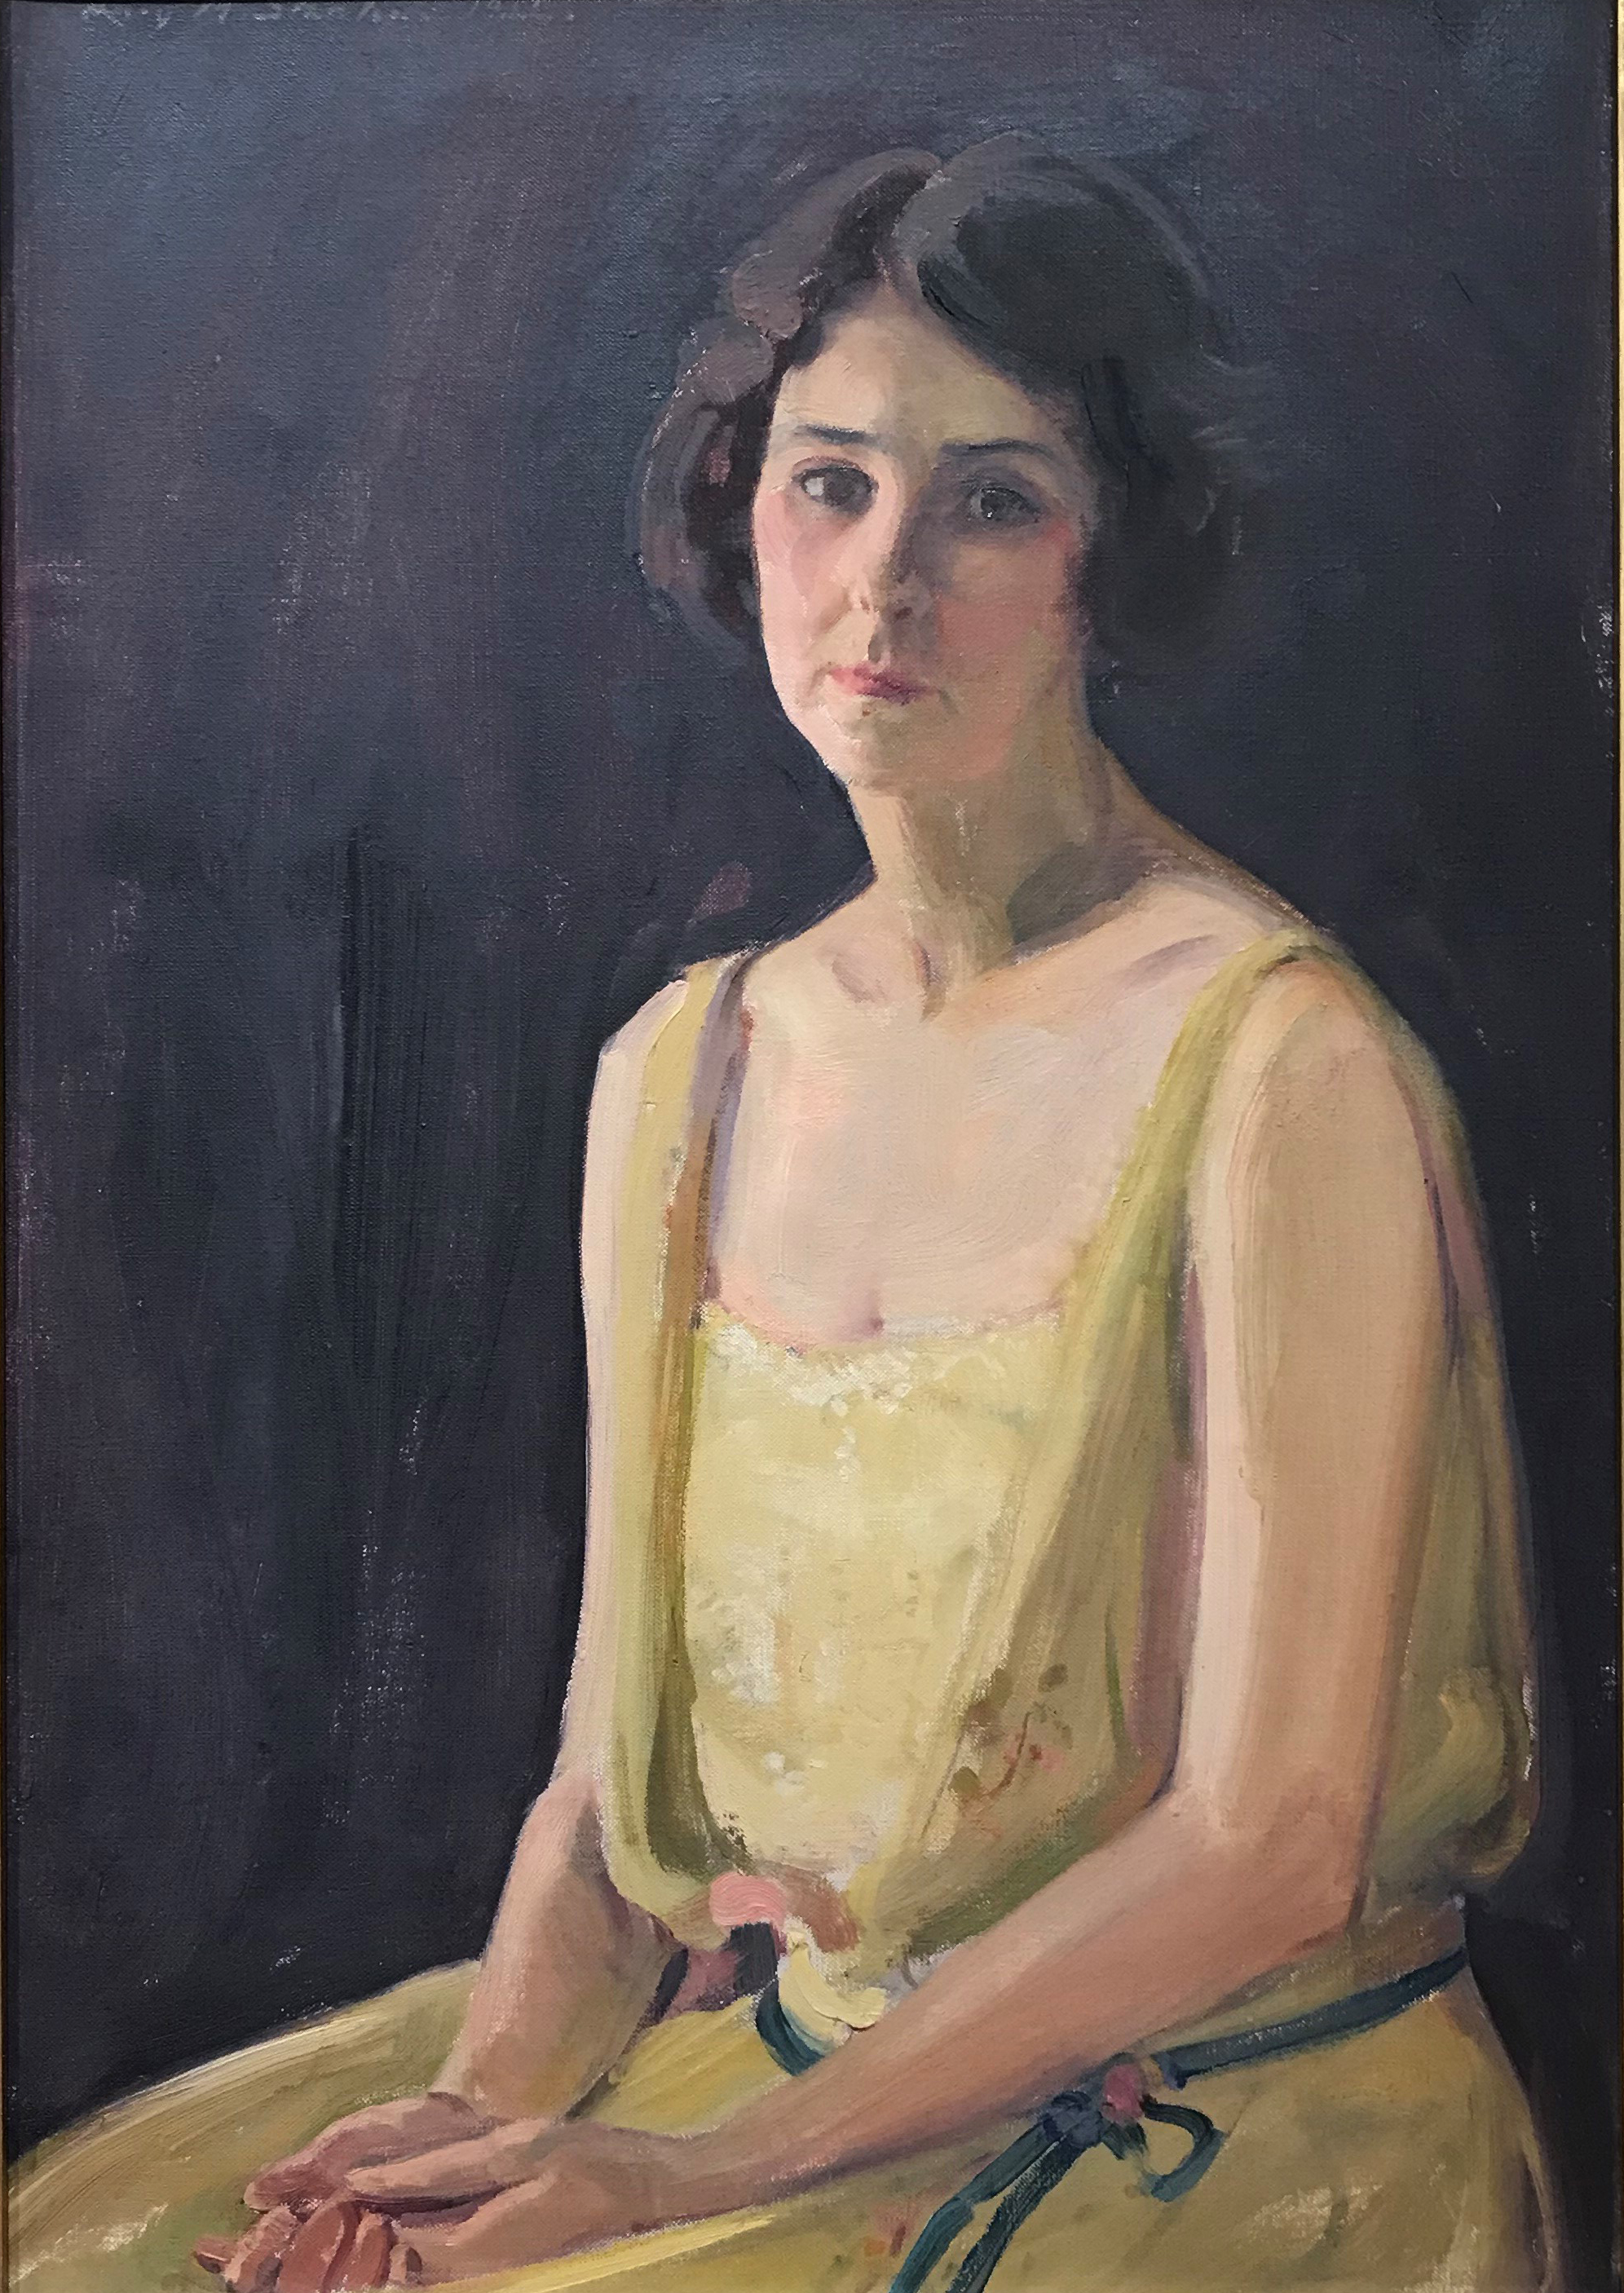 伊莉莎白·佩頓·斯坦頓 by Lucy May Stanton - 1922 年 - 64.8 × 44.8 釐米 